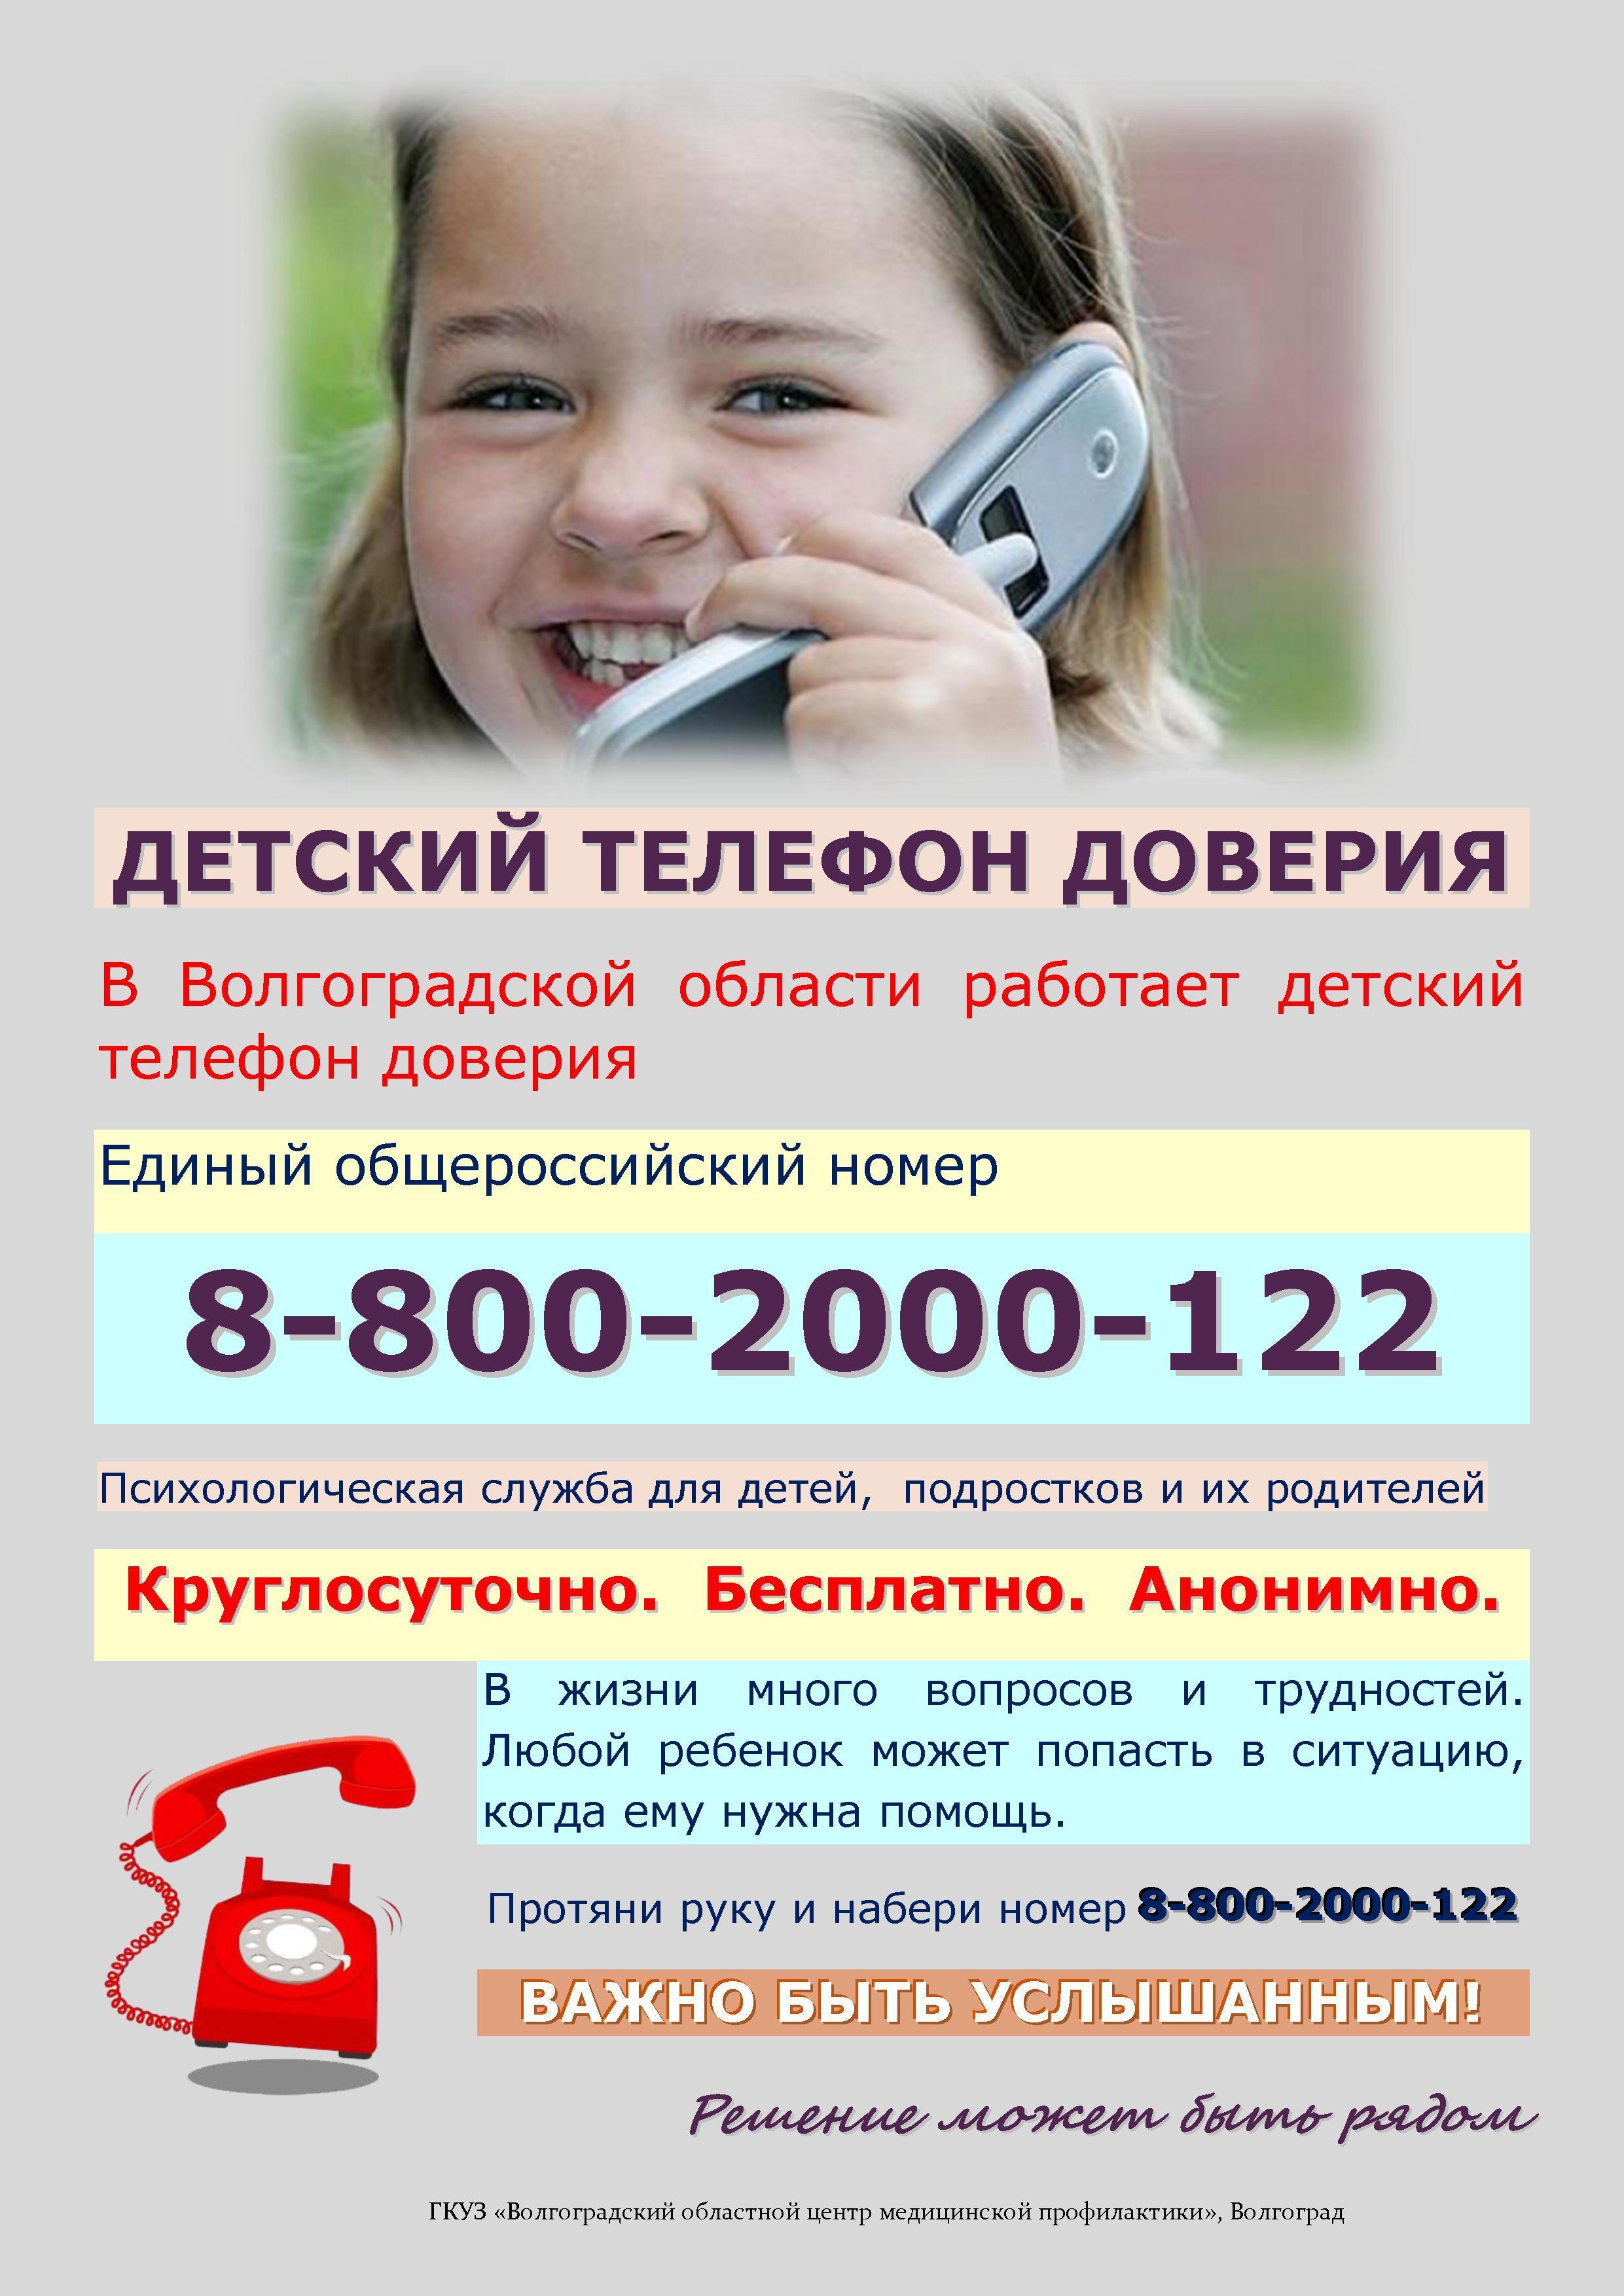 Платный телефон доверия. Телефон доверия. Детский телефон доверия. Телефон доверия для детей подростков и их родителей. Номер телефона доверия для детей.